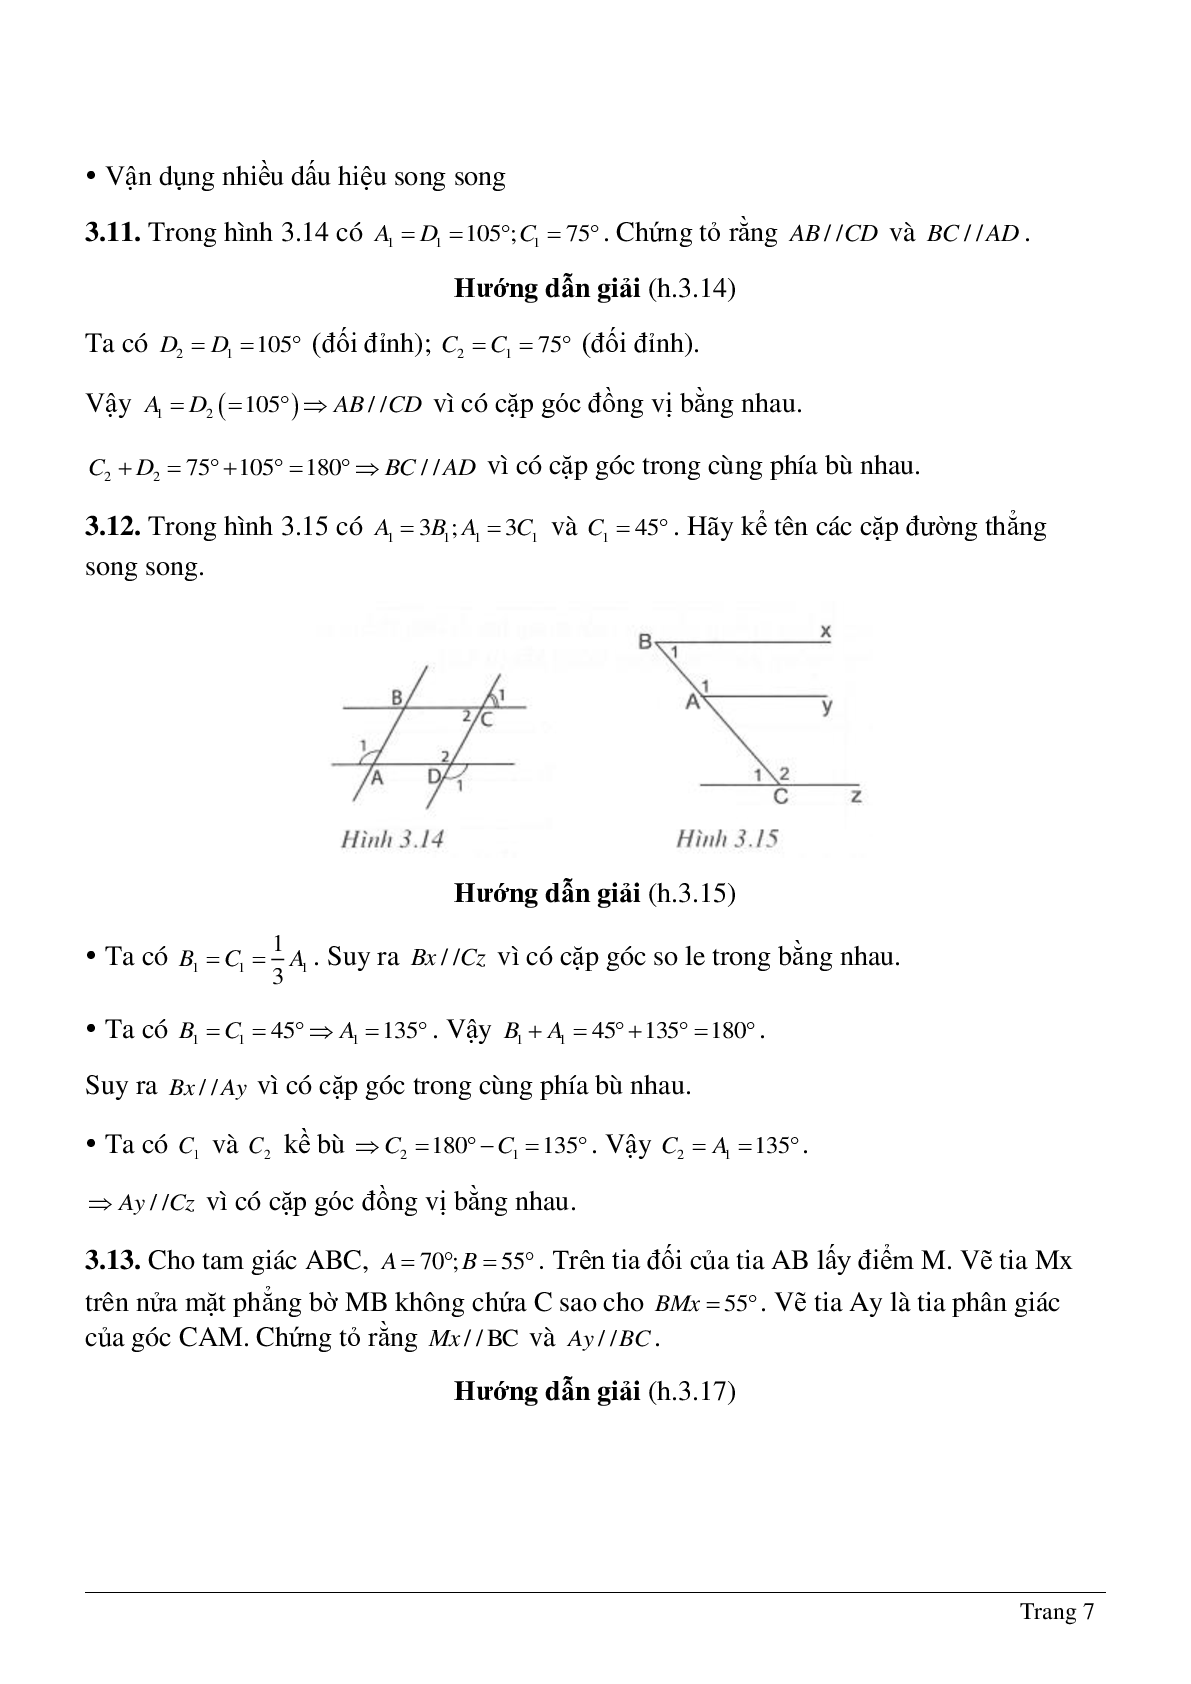 Phương pháp giải về Dấu hiệu hai đường thẳng song song hay nhất (trang 7)